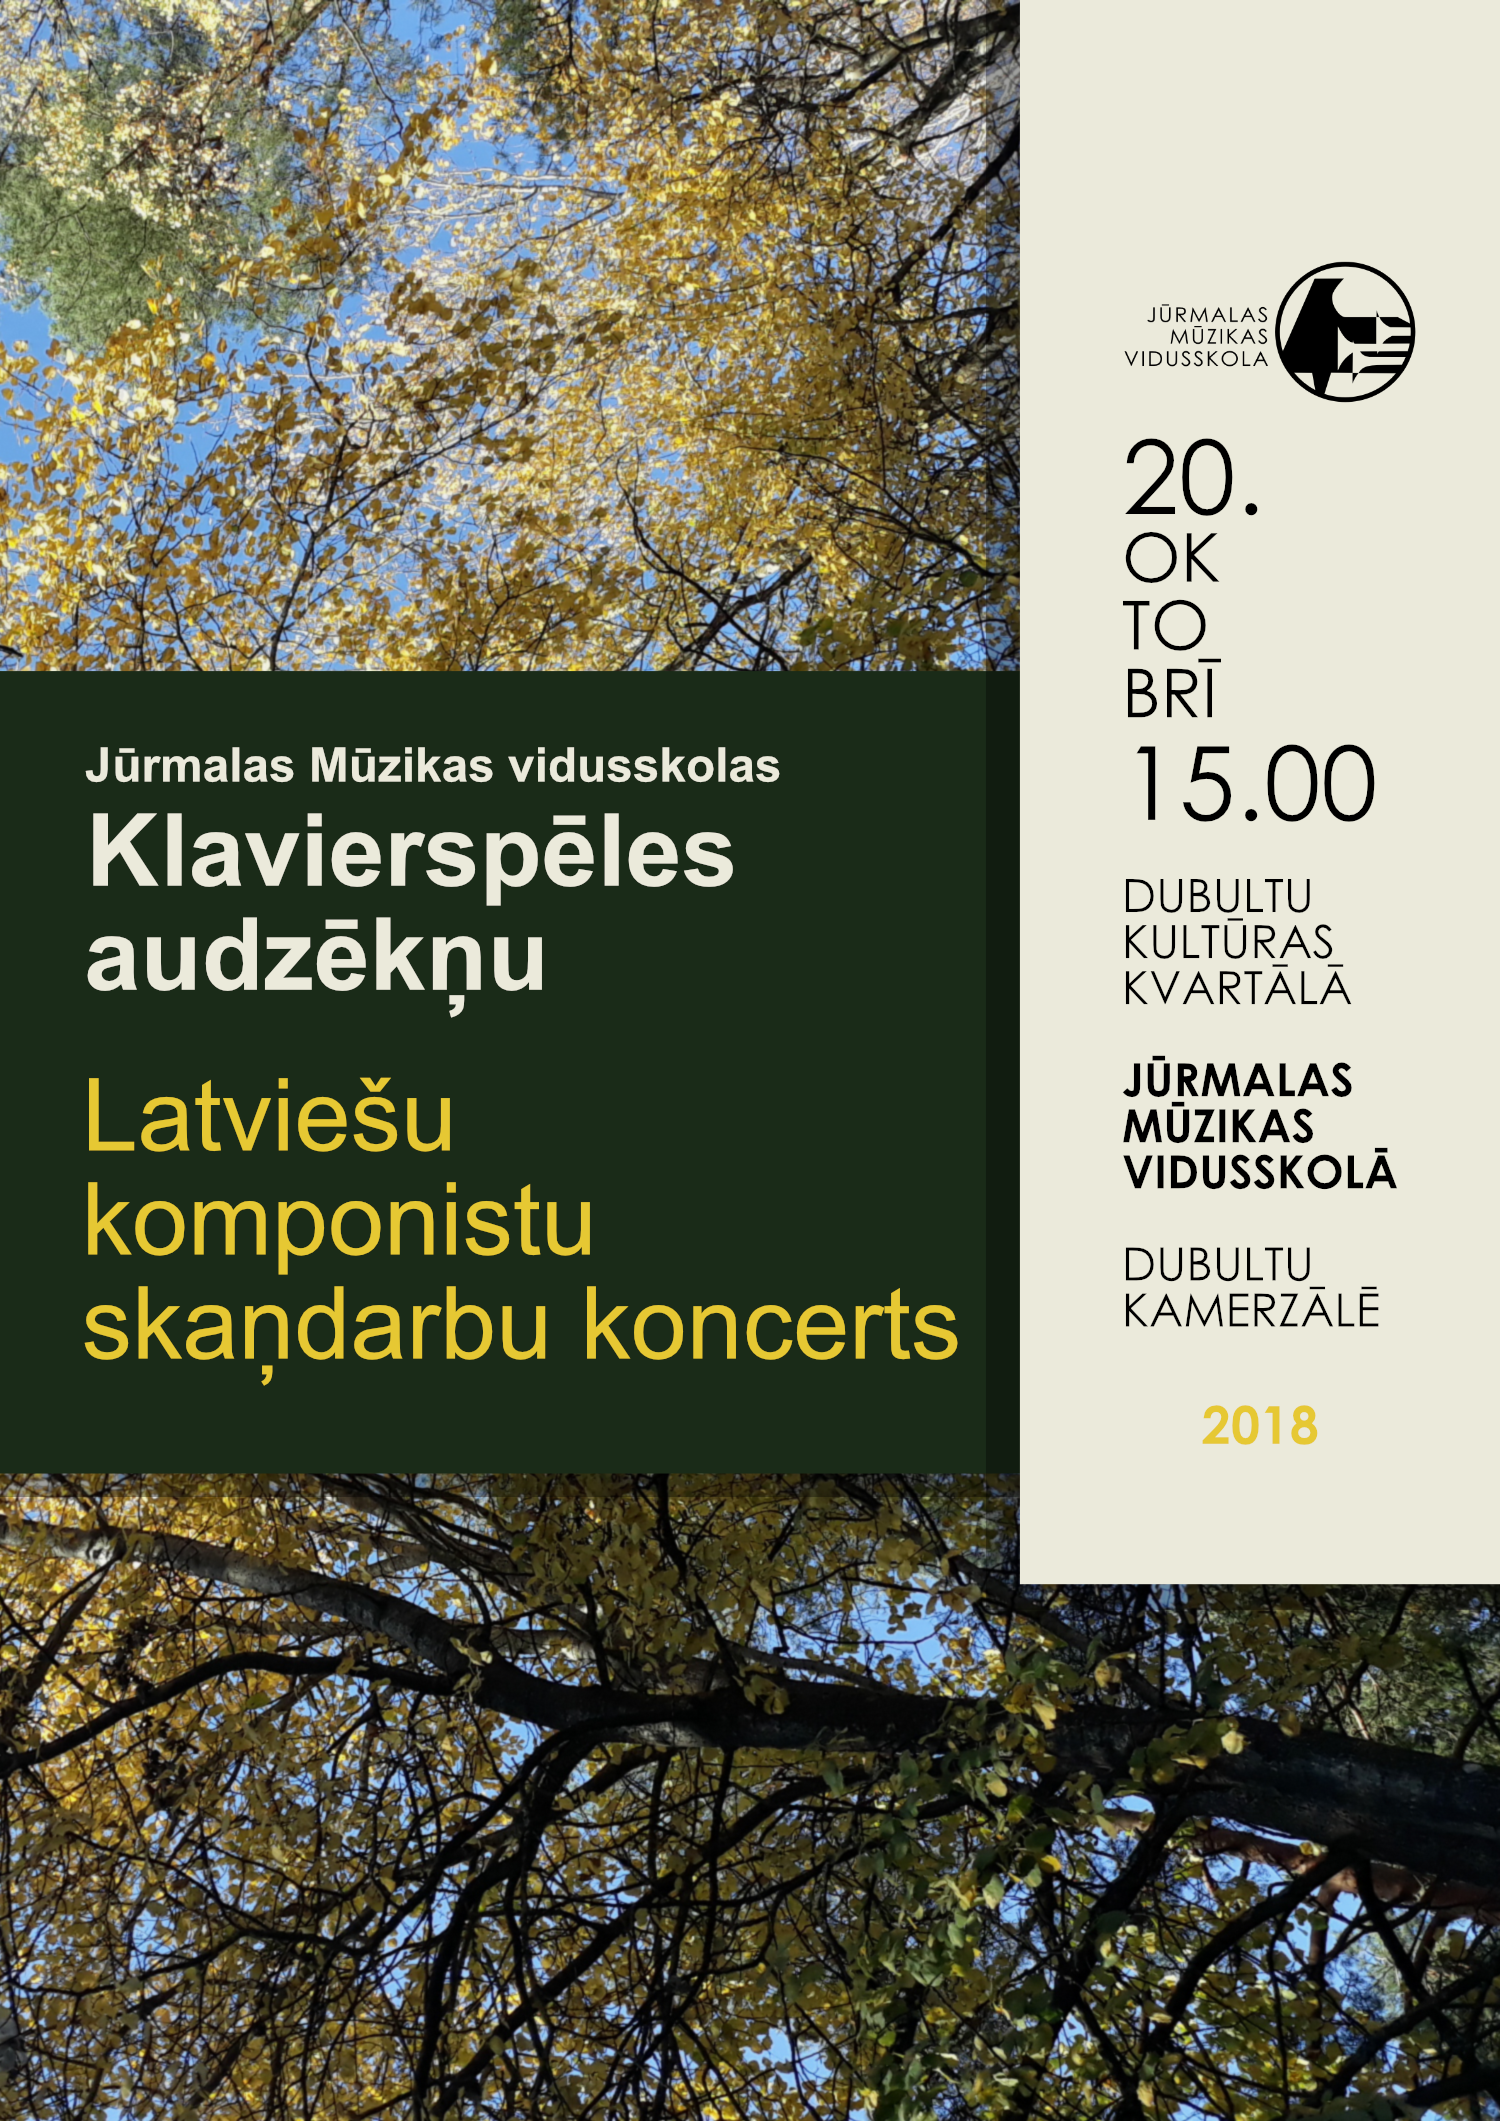  Klaverspēles audzēkņu koncertu, kurā tiks izpildīti latviešu komponistu skaņdarbi